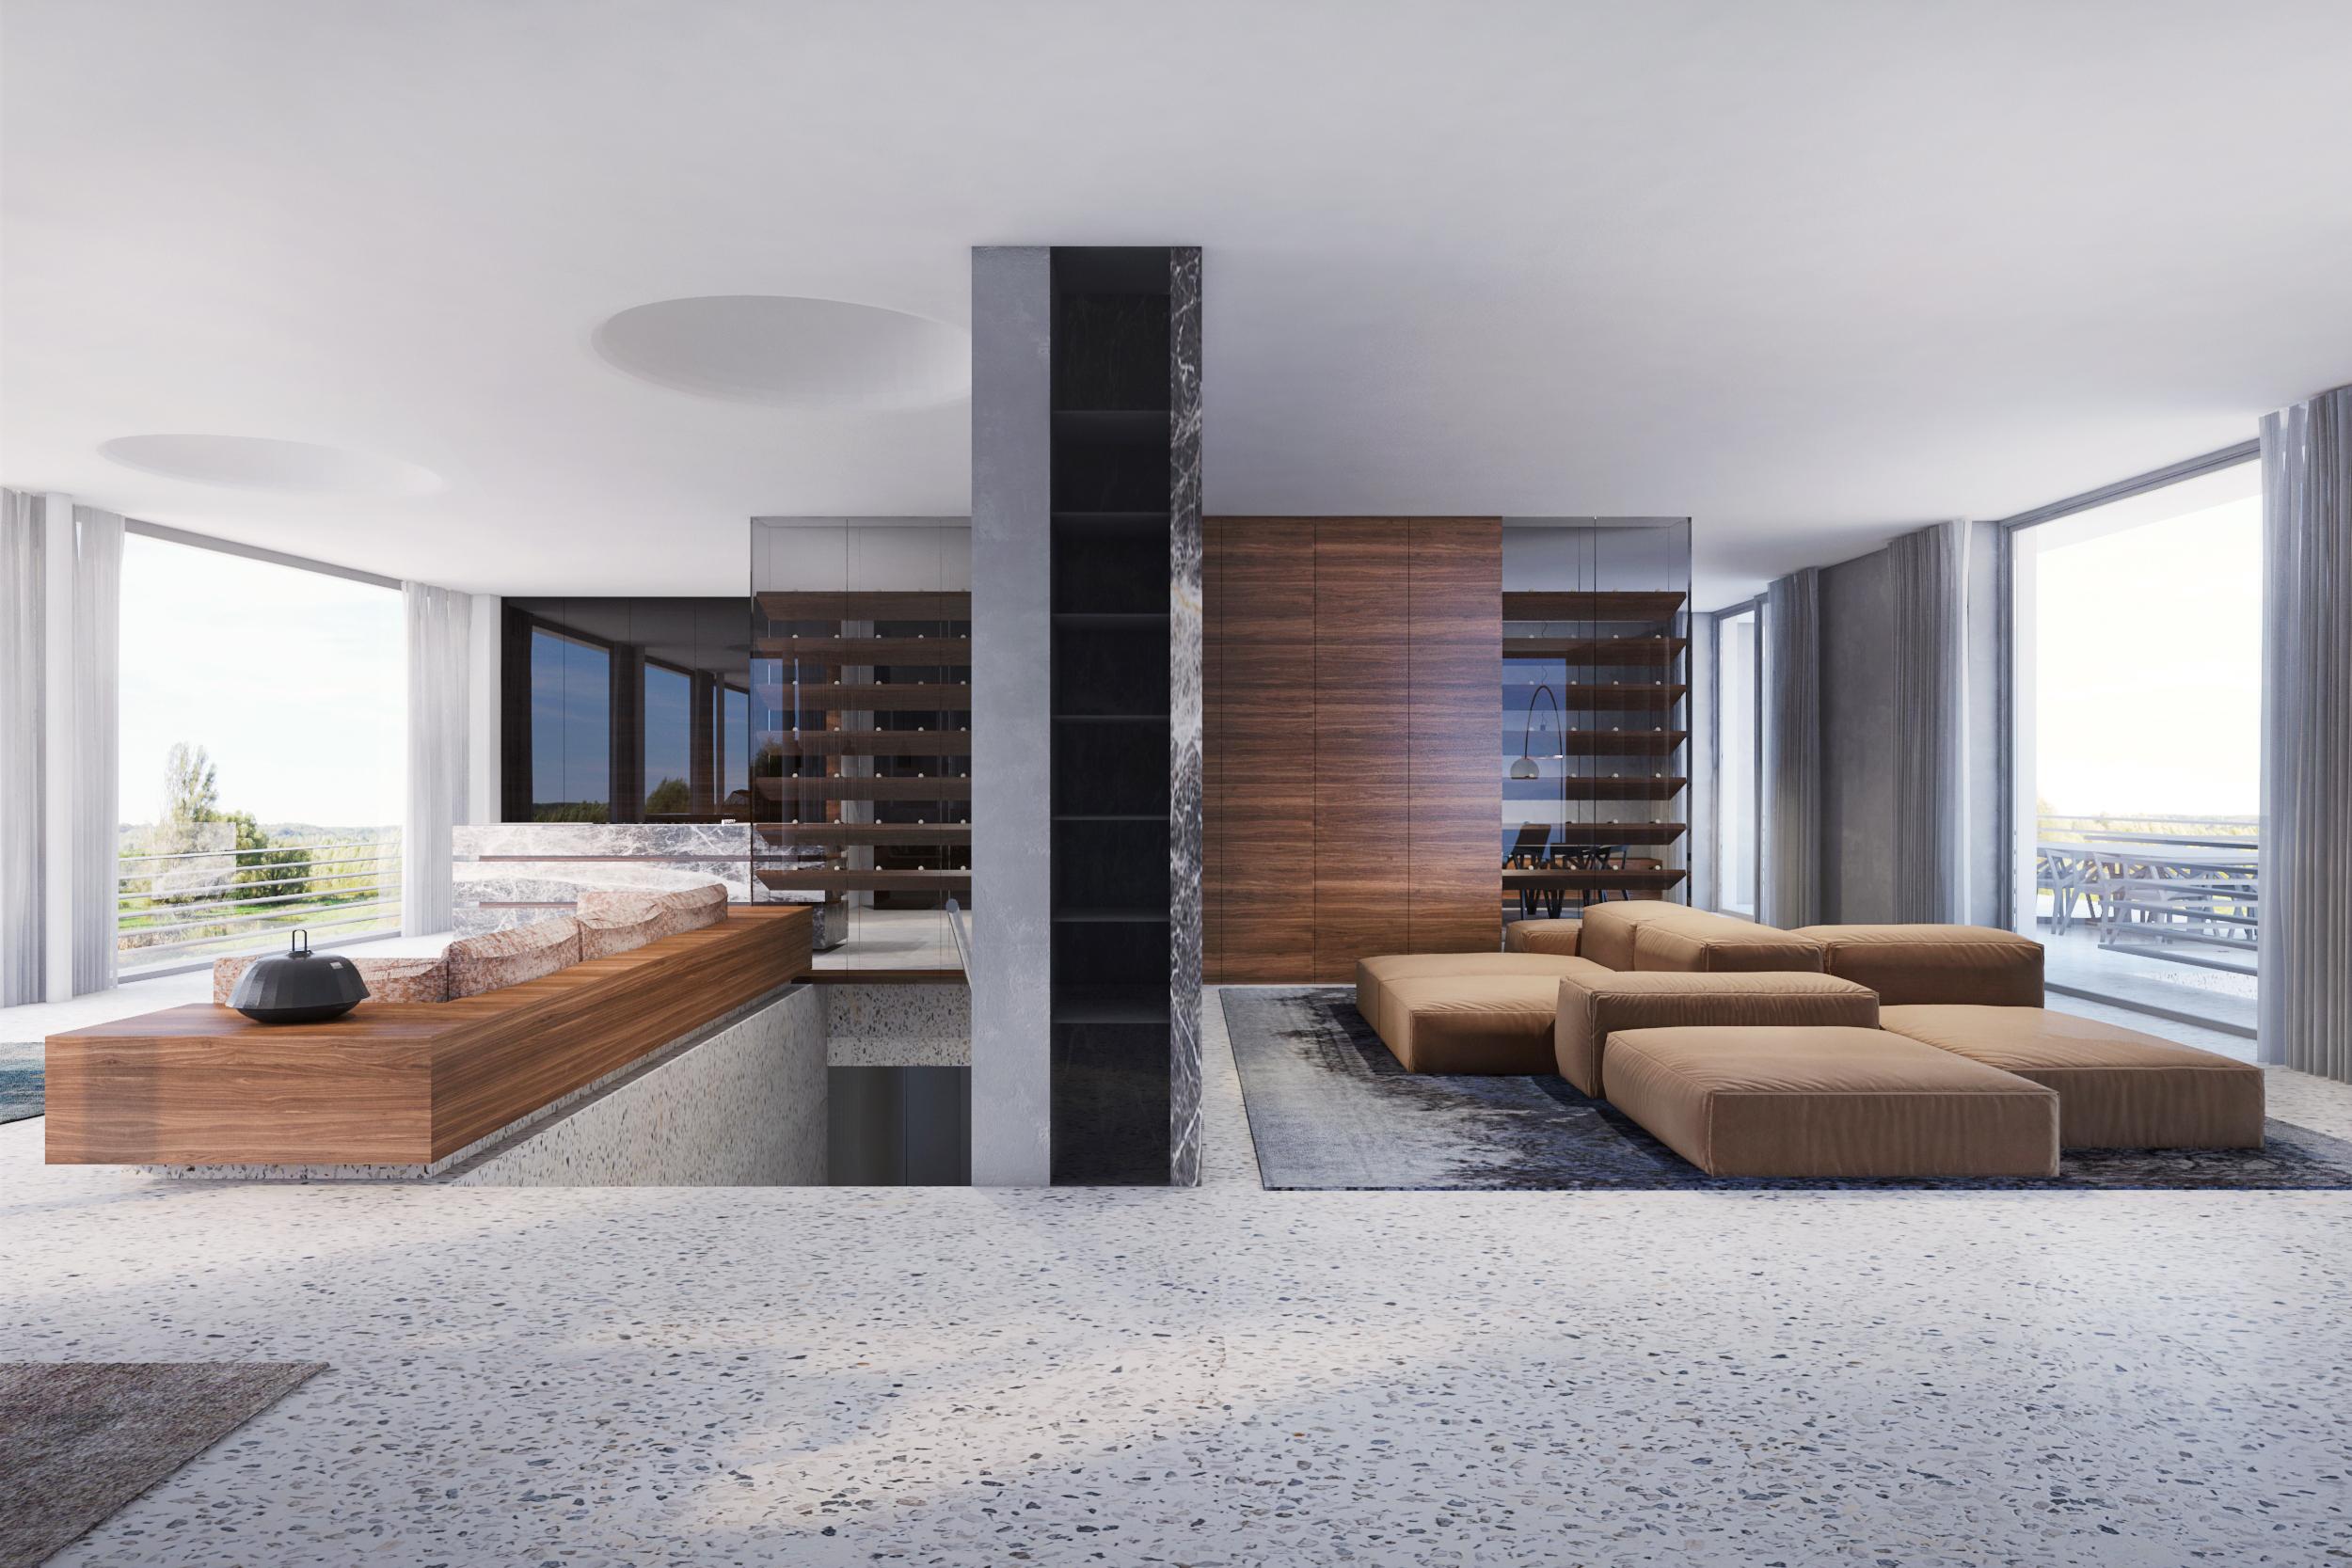 Haus K
Krems
#innenarchitektur #interiordesign #modern
©destilat